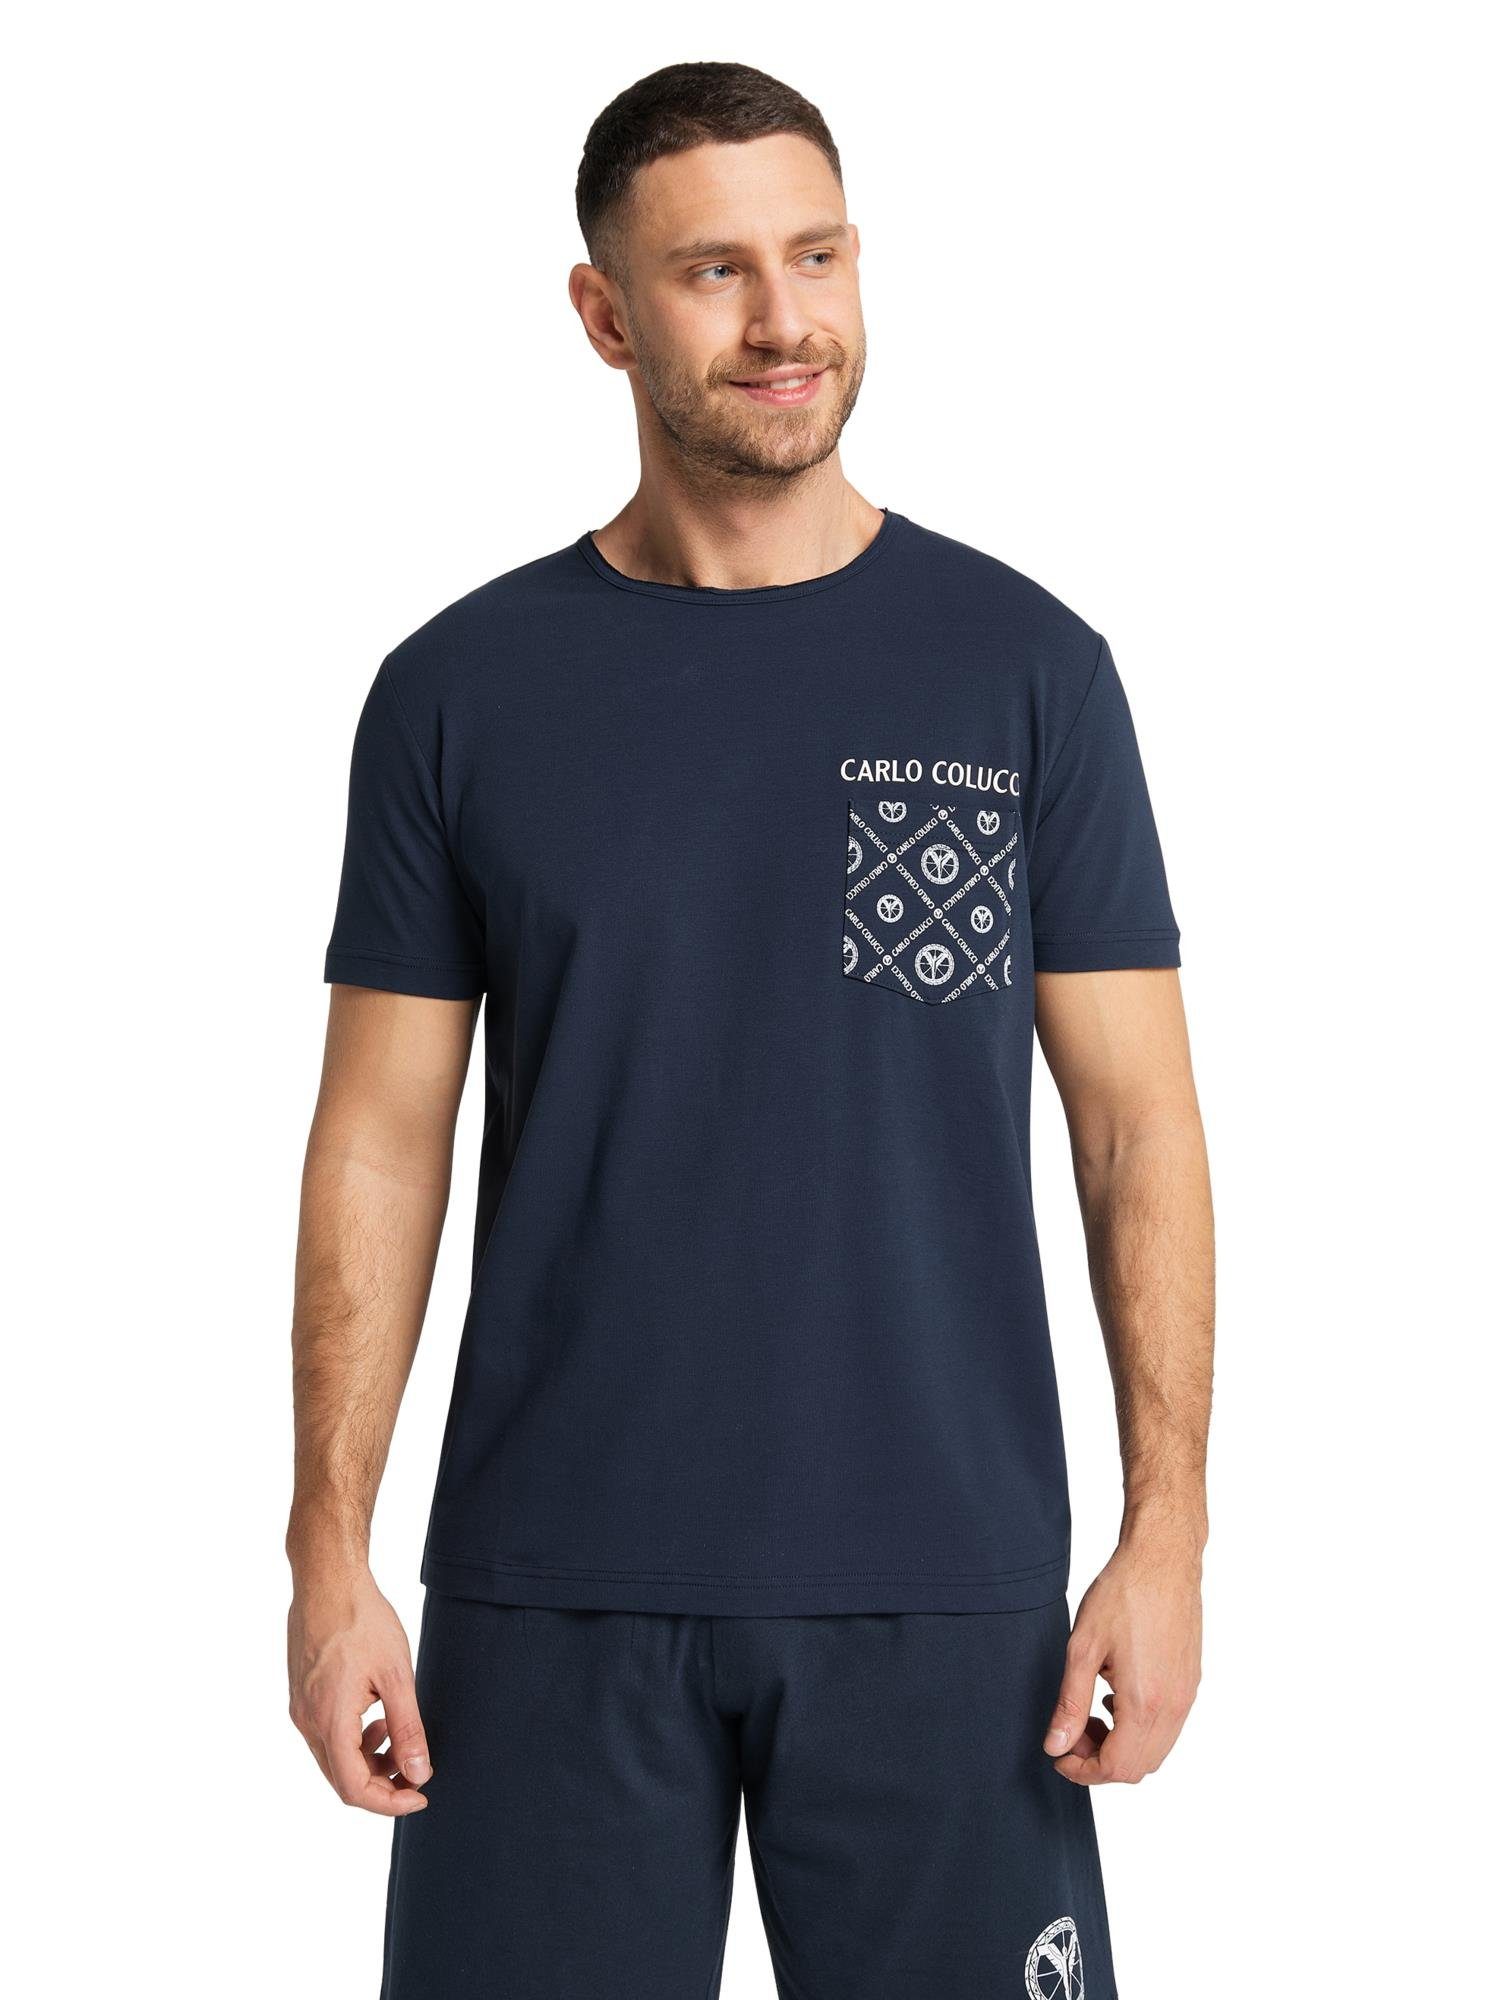 CARLO COLUCCI Collatuzzo T-Shirt Navy